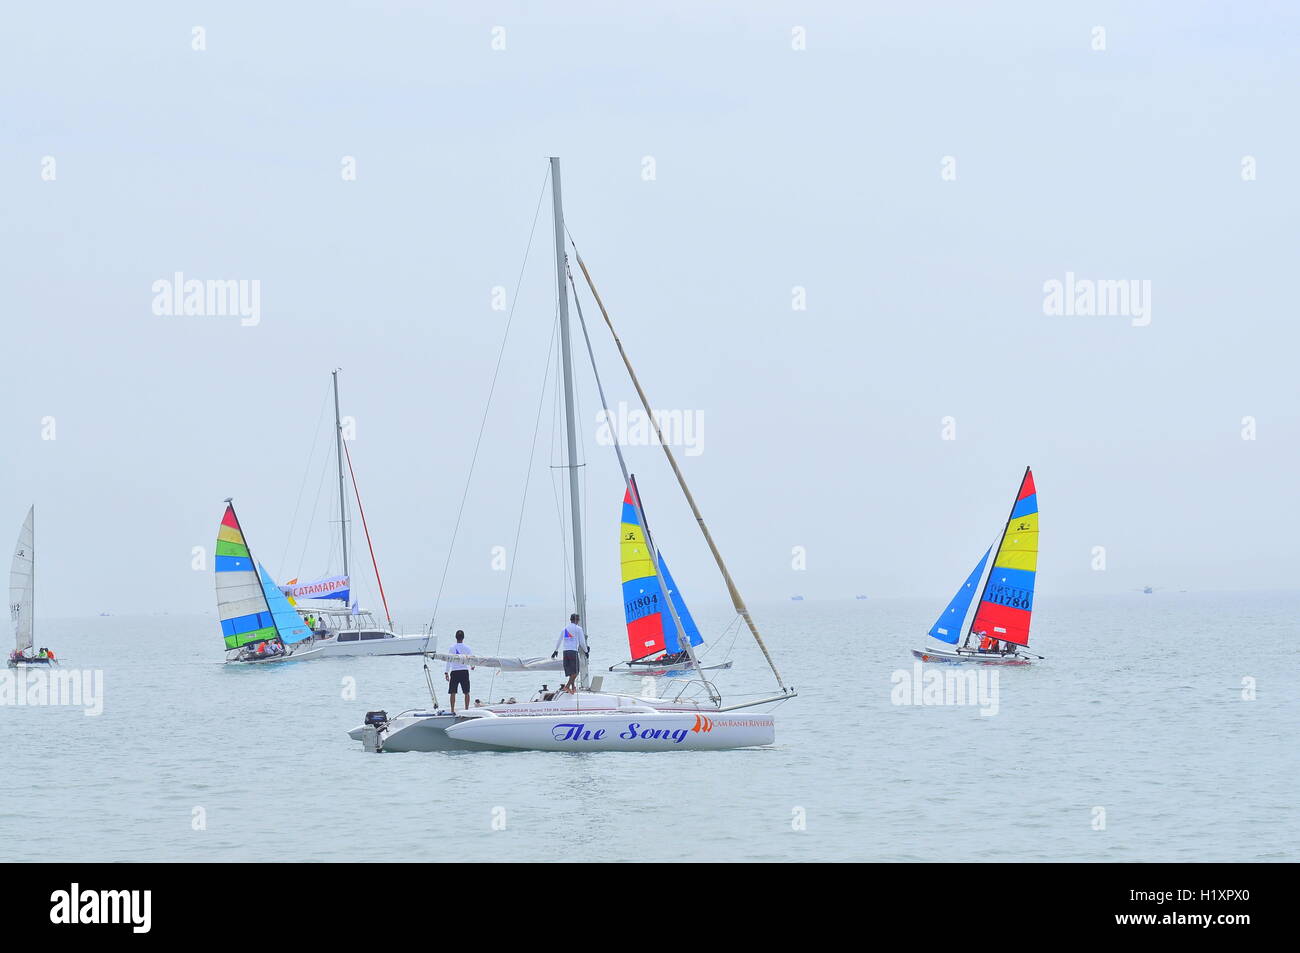 Nha Trang, Vietnam - July 11, 2015: Sailors are preparing sailing boats ready for a race in the Nha Trang bay Stock Photo